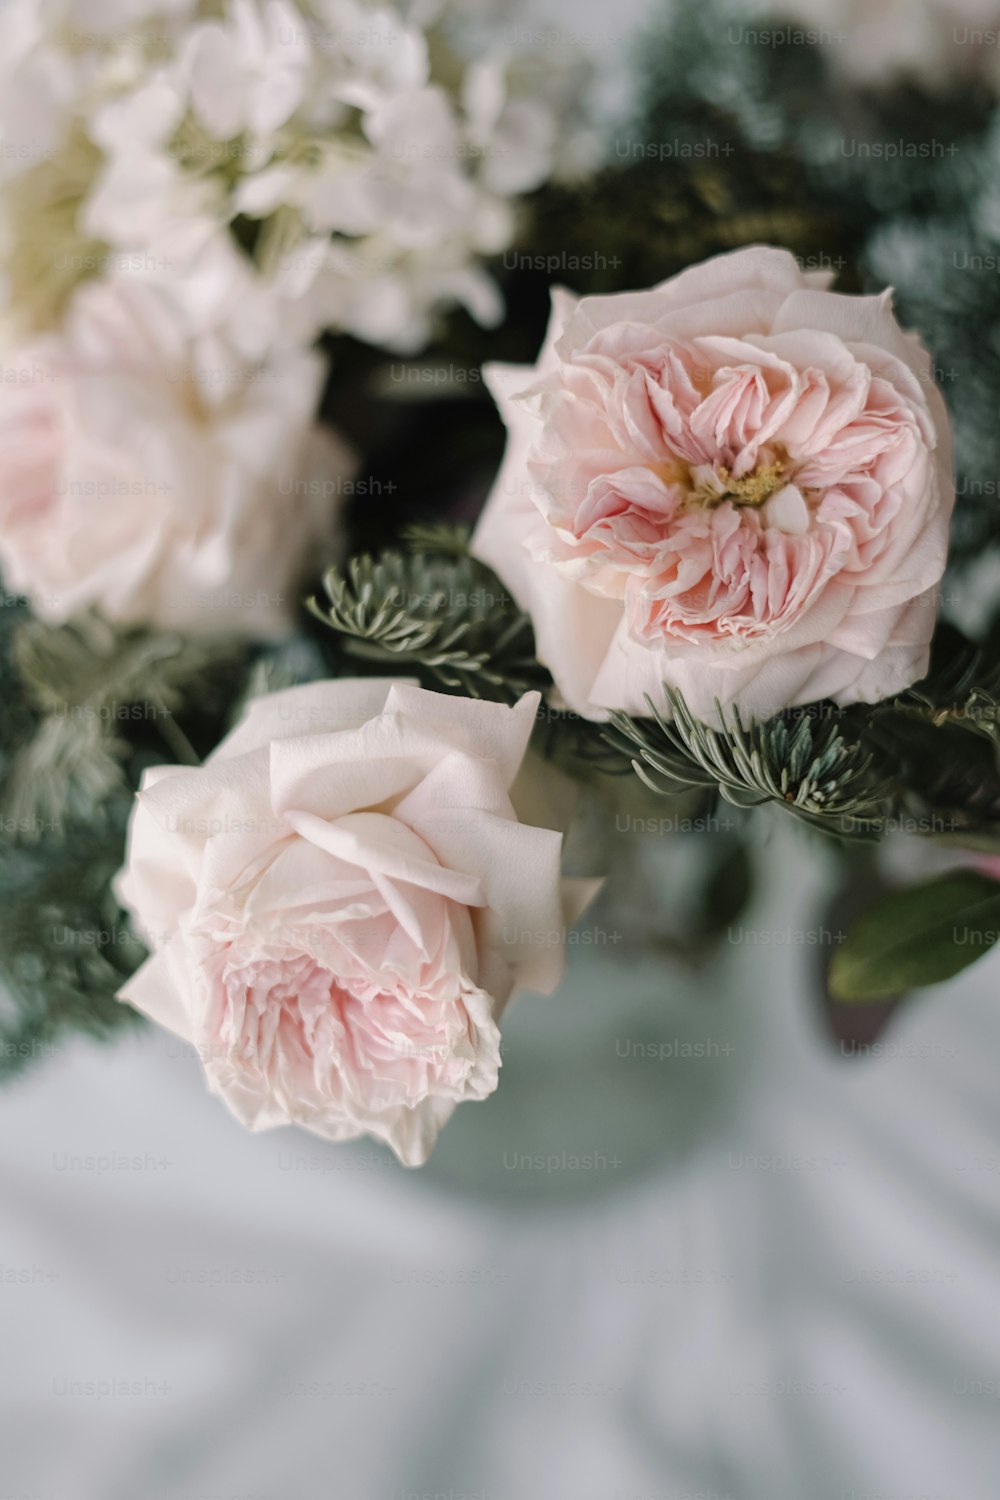 un vase rempli de fleurs roses et blanches